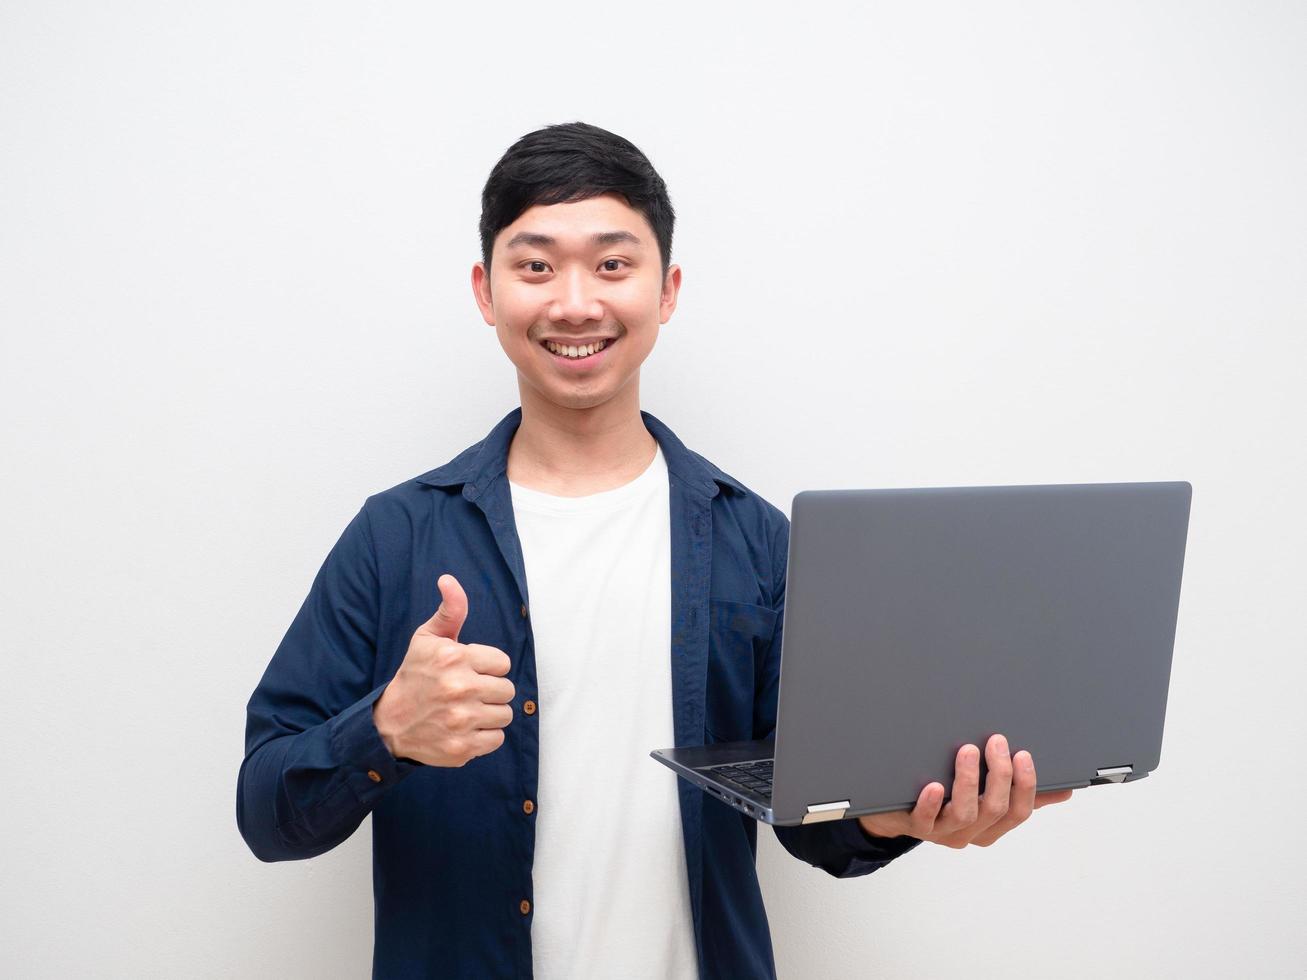 bonito homem asiático camisa azul segurar laptop na mão e polegar para cima com sorriso feliz alegre no fundo branco foto